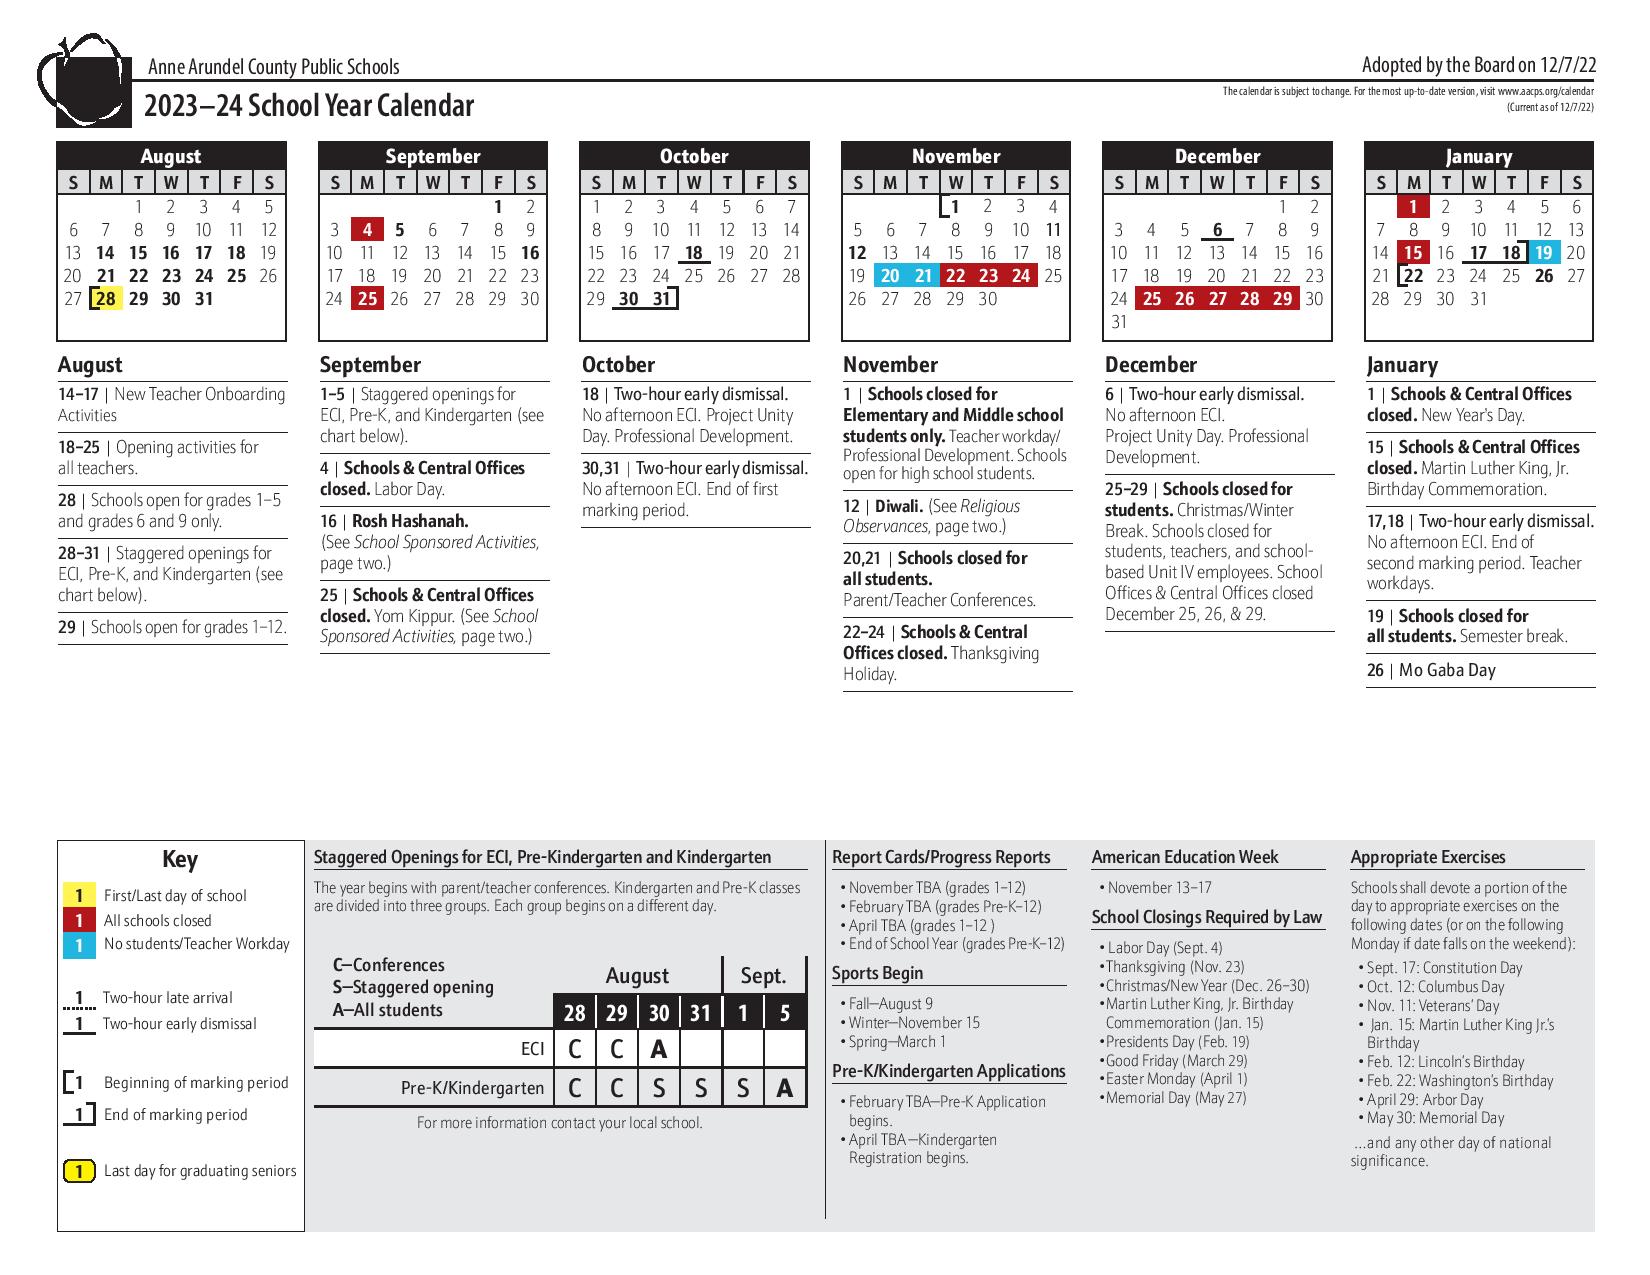 Anne Arundel County Public Schools Calendar 2023-2024 PDF